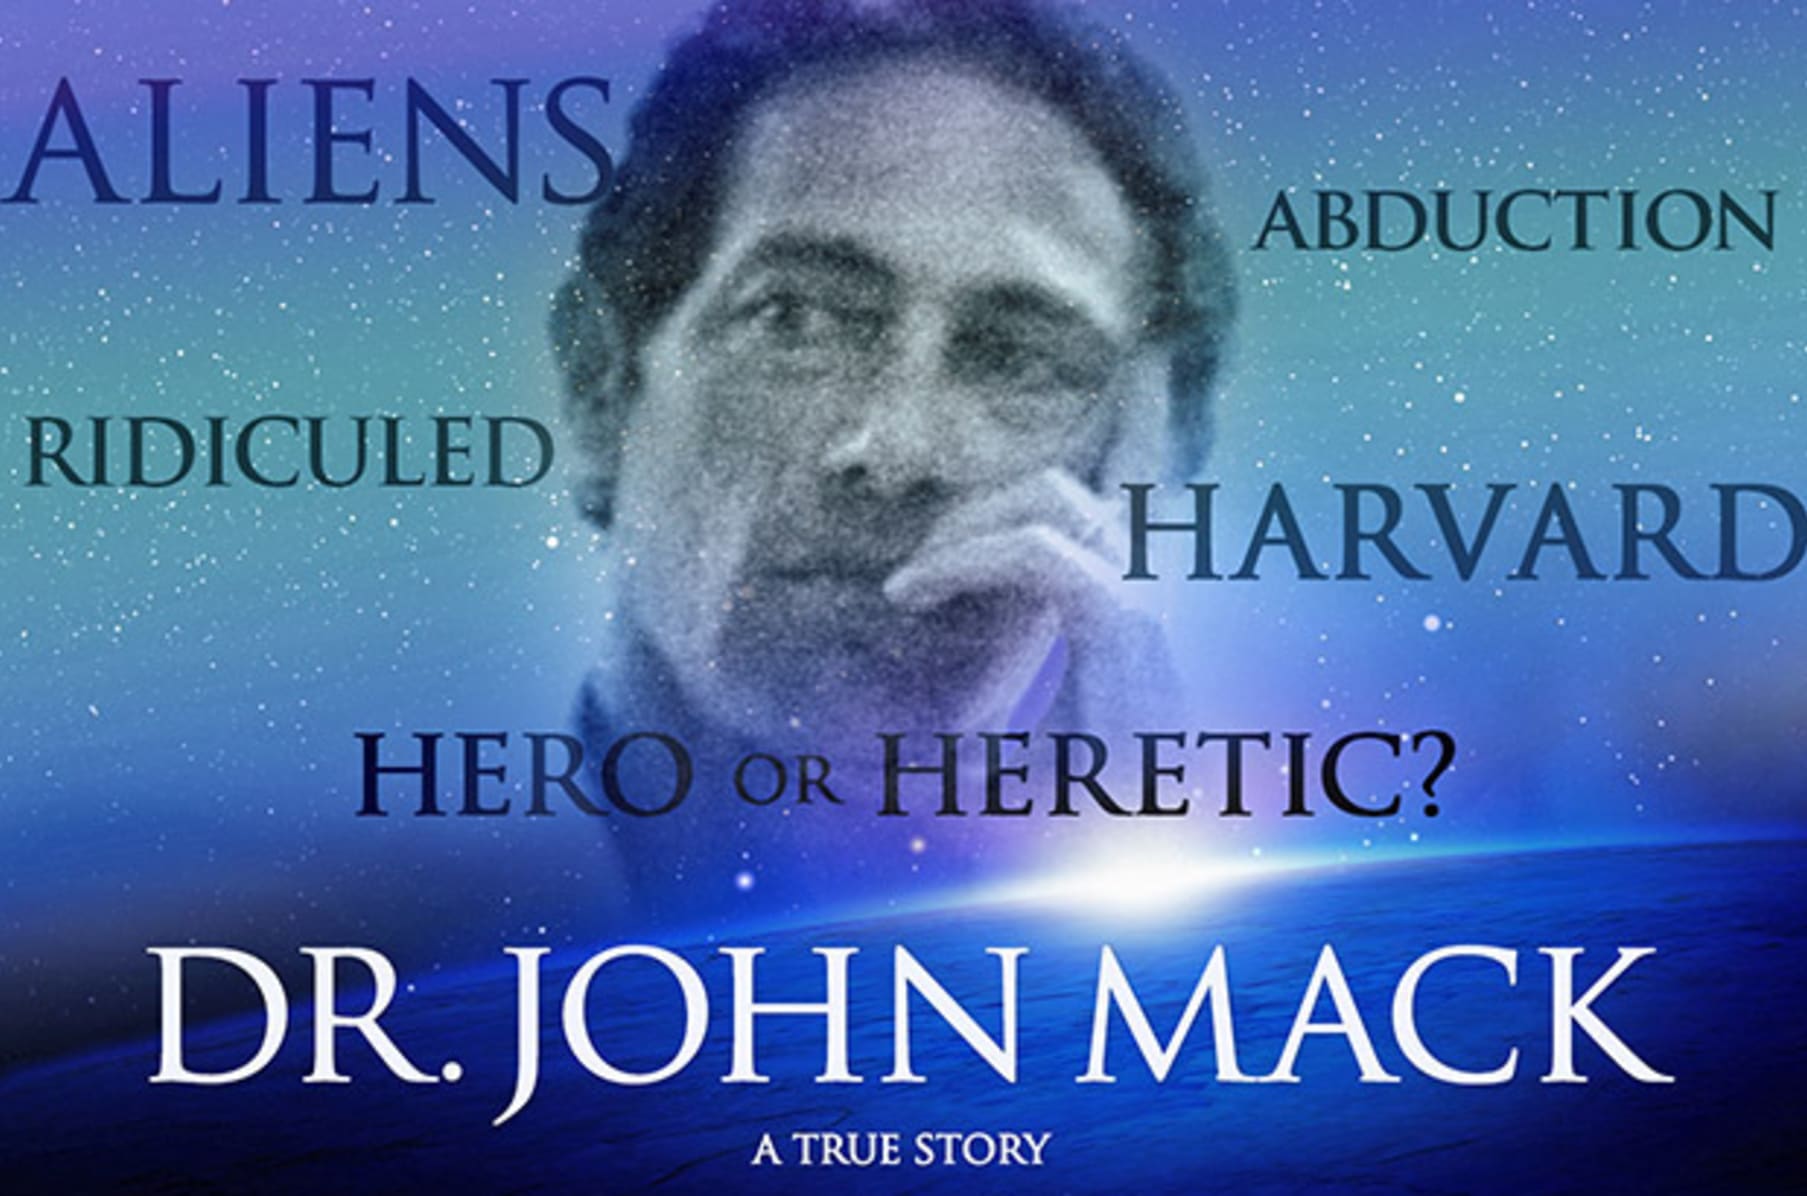 JOHN MACK: The Movie - Phase I Development | Indiegogo